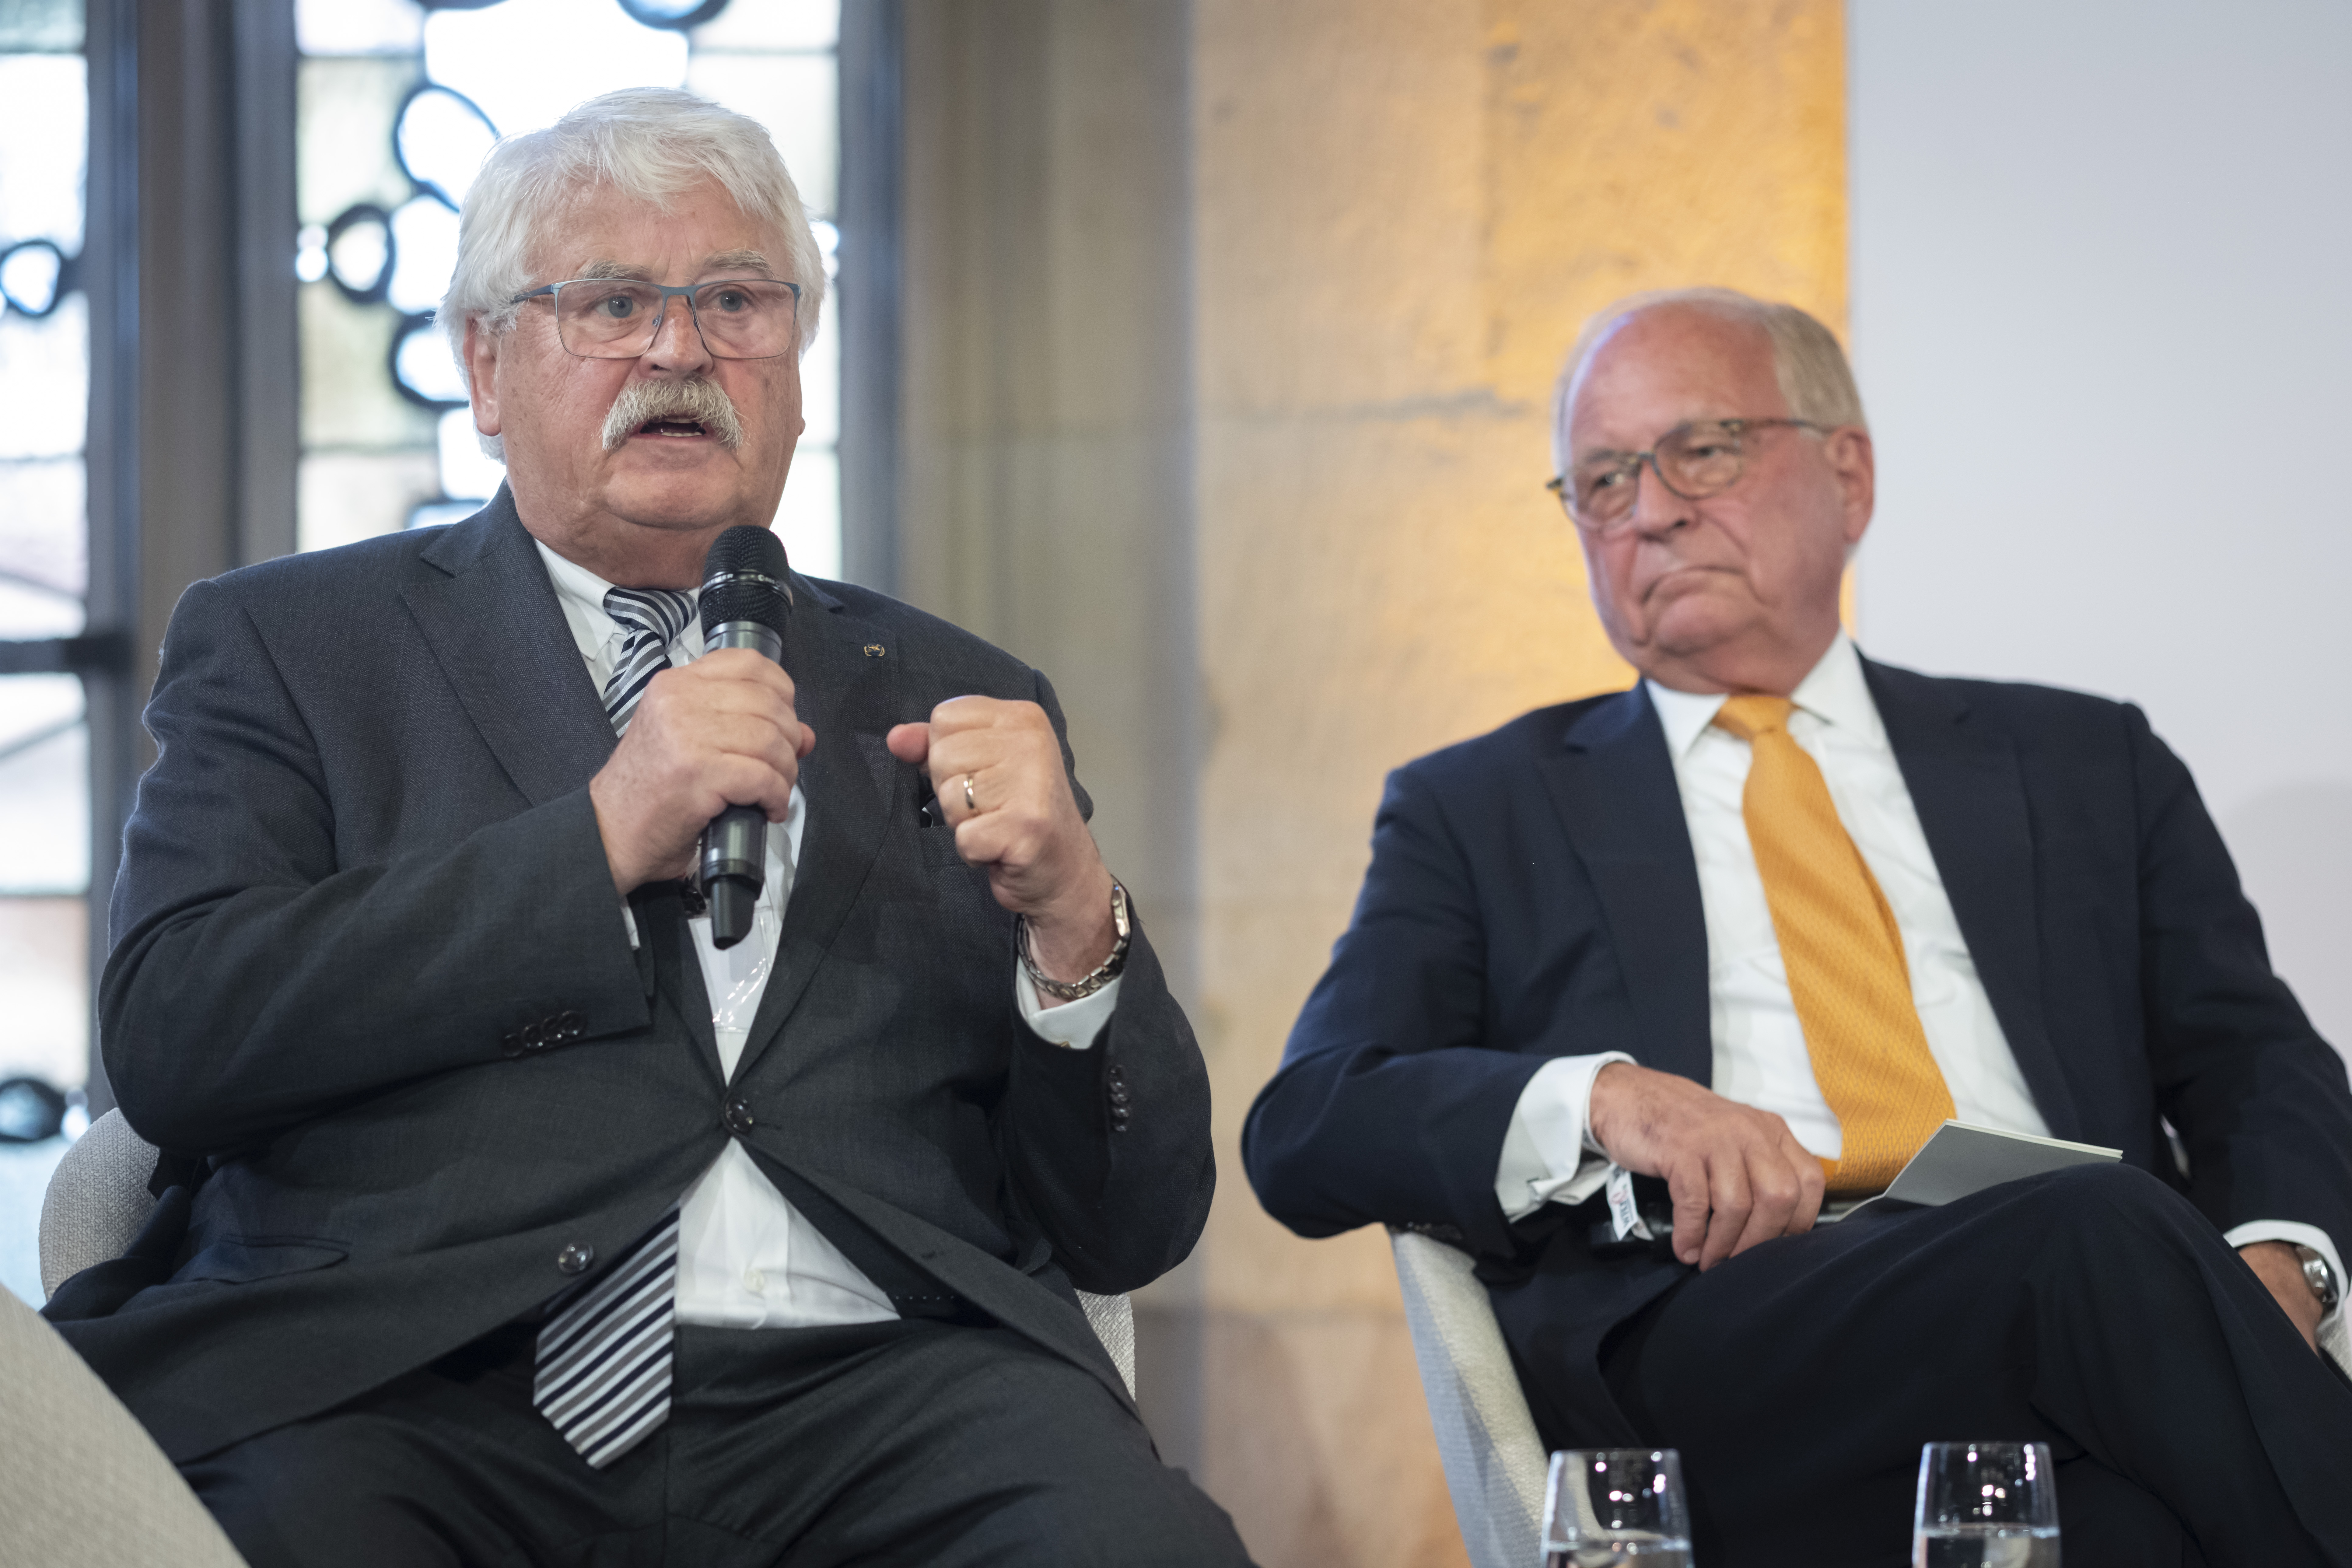  Elmar Brok, ehemaliges Mitglied des EU-Parlaments, und Prof. Dr. Wolfgang Ischinger, ehemaliger Leiter der Münchner Sicherheitskonferenz 